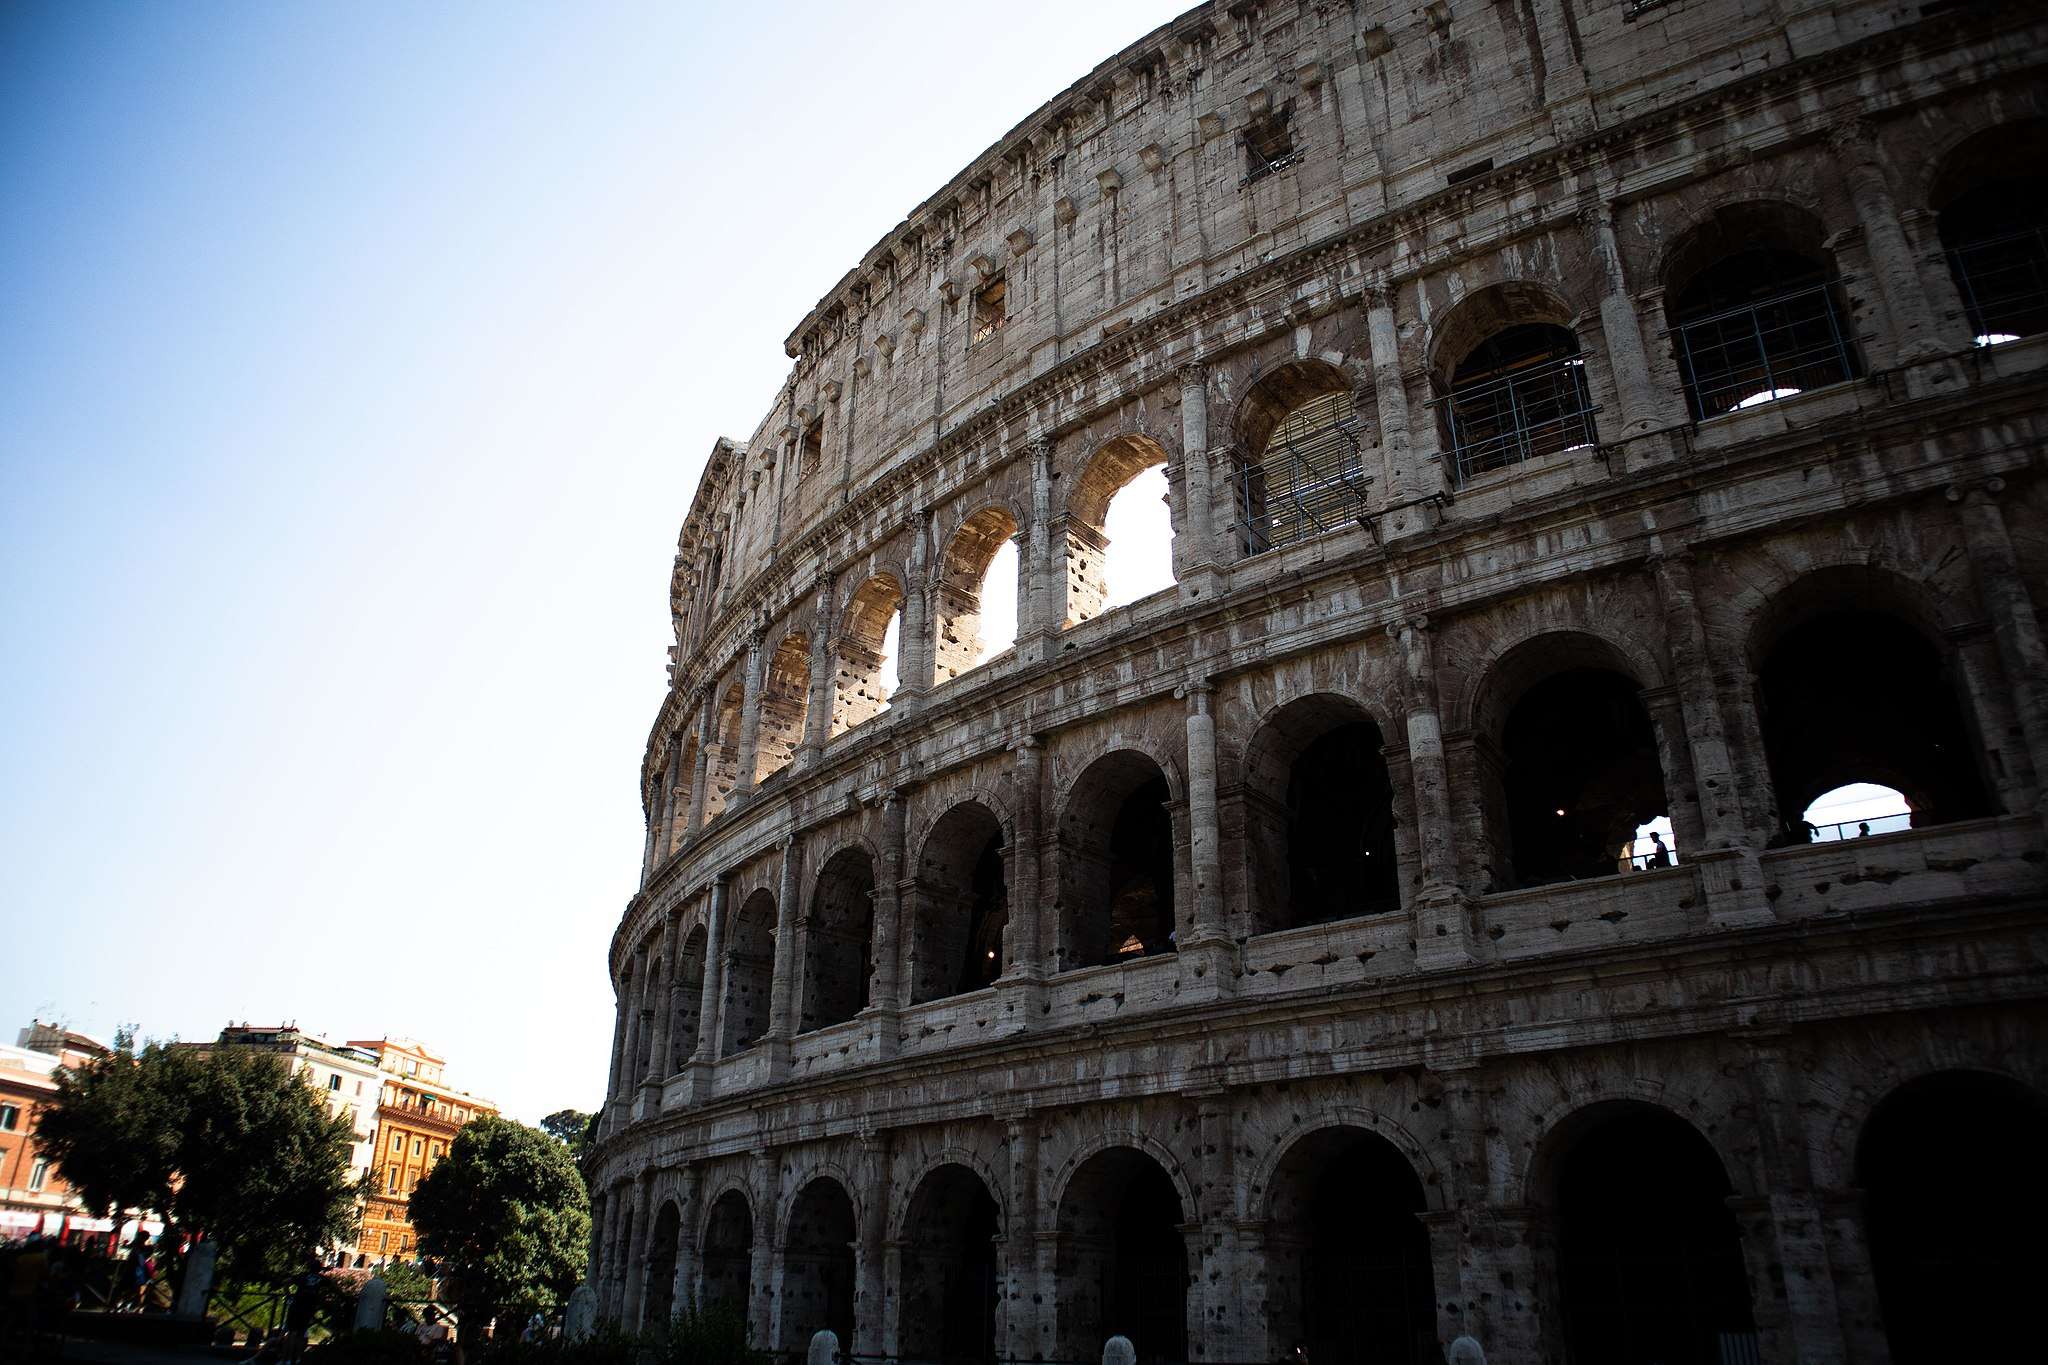 Hva kjennetegner den romerske kulturen?